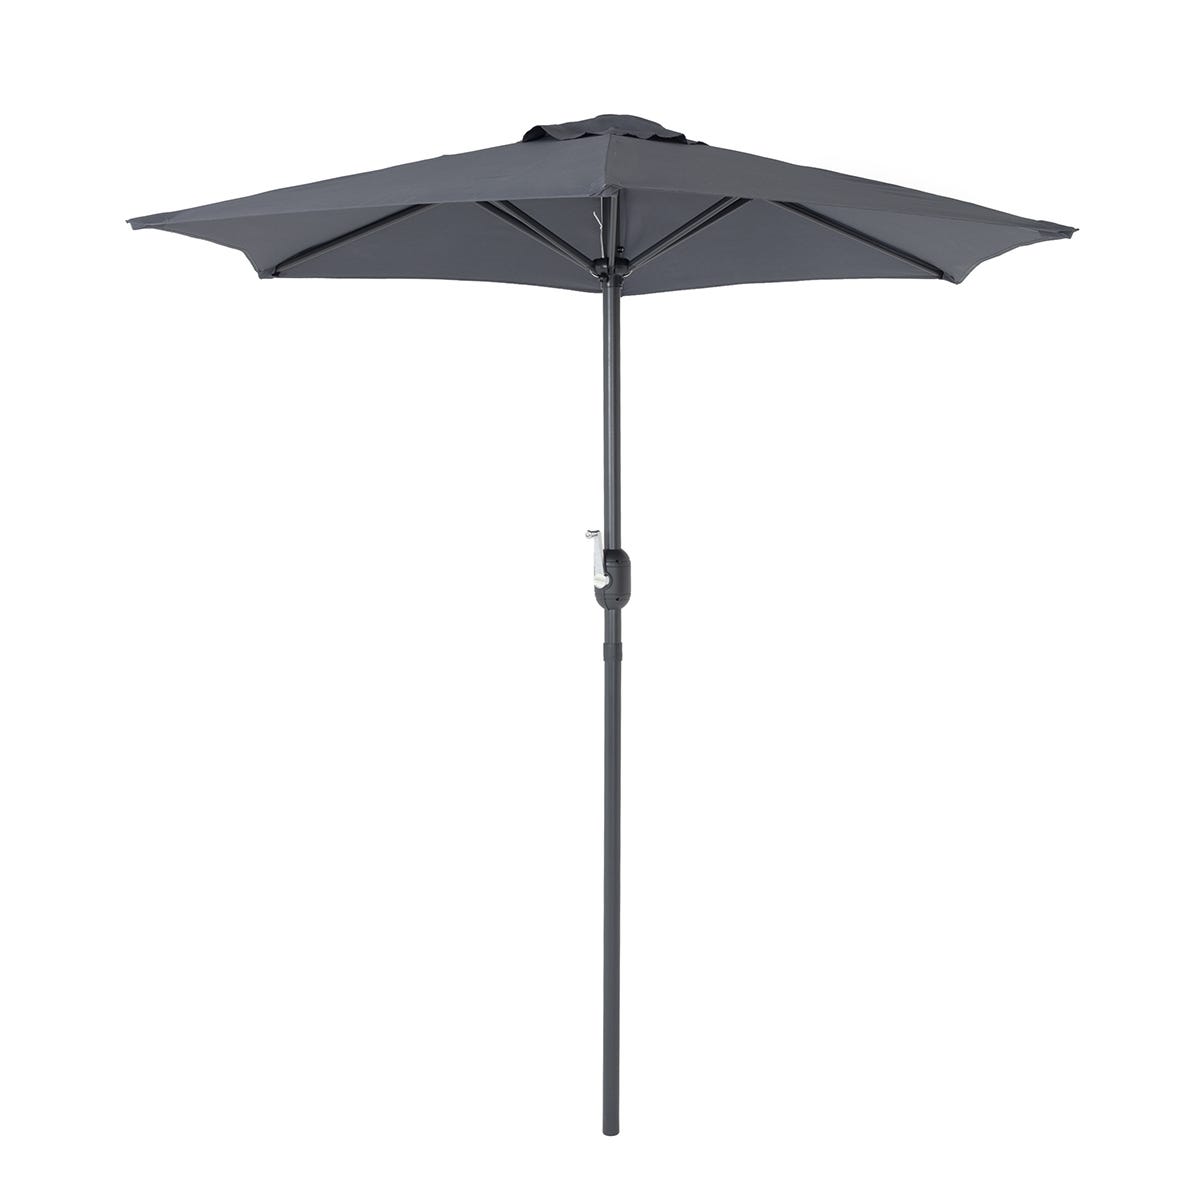 Charles Bentley 2m Patio Market Garden Umbrella Grey